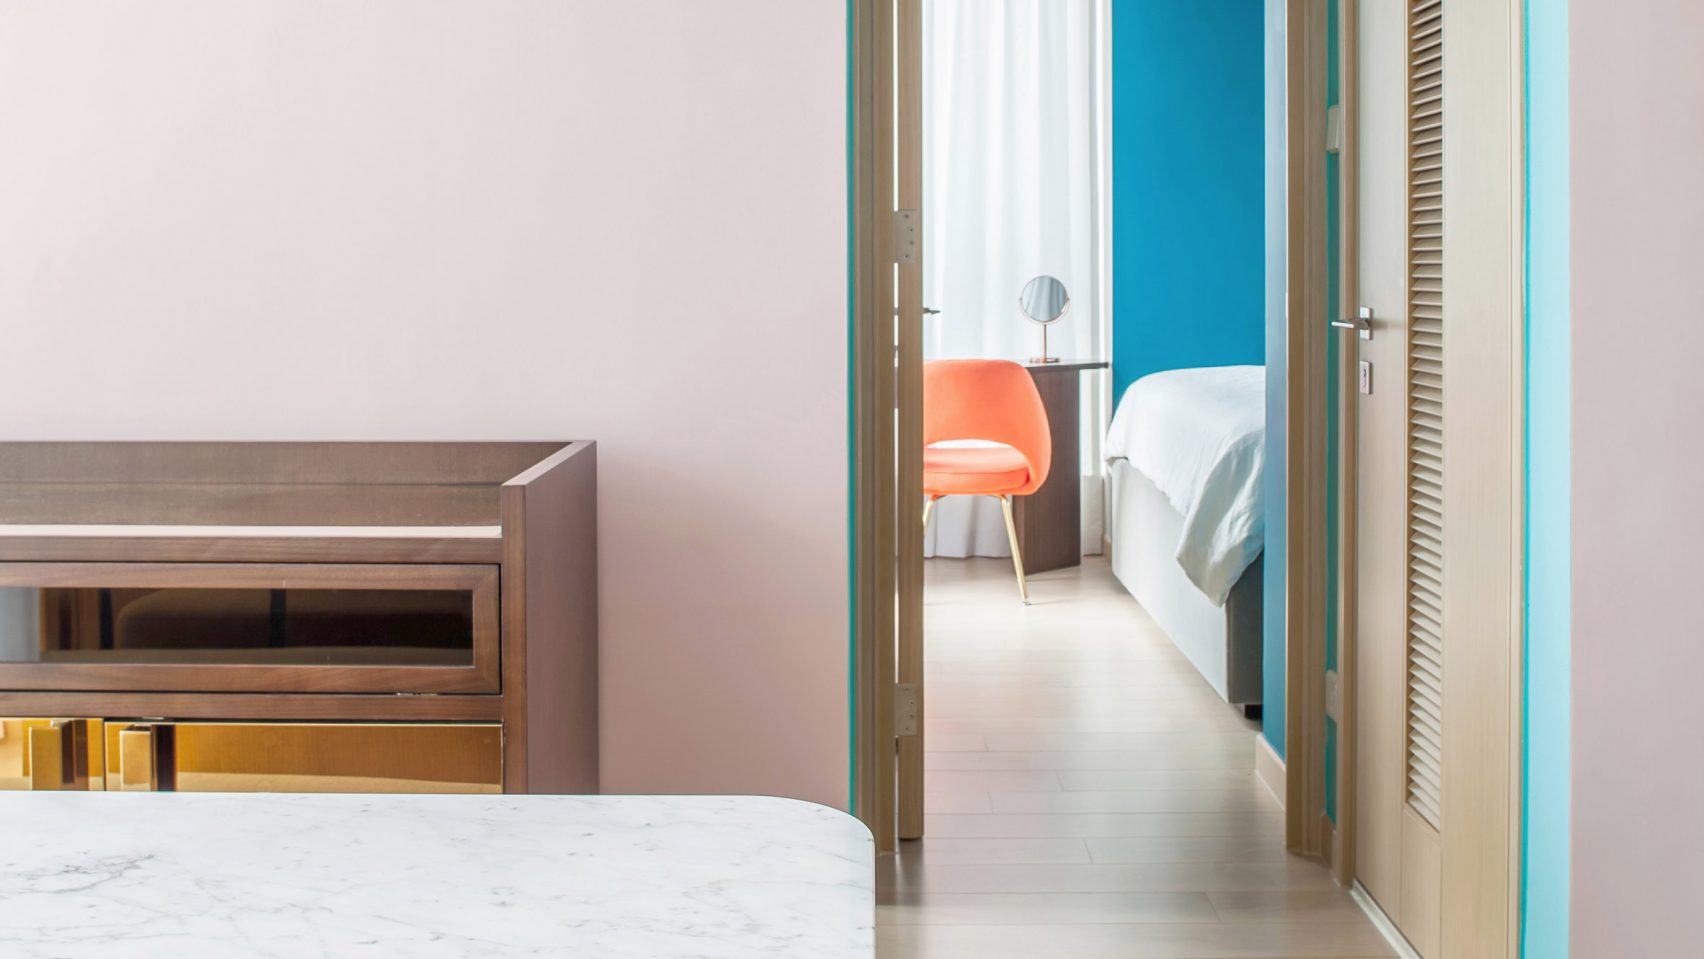 Thiết kế căn hộ với tường và đồ nội thất có màu rực rỡ dành riêng cho chủ nhân thiết kế thời trang - Ảnh 1.